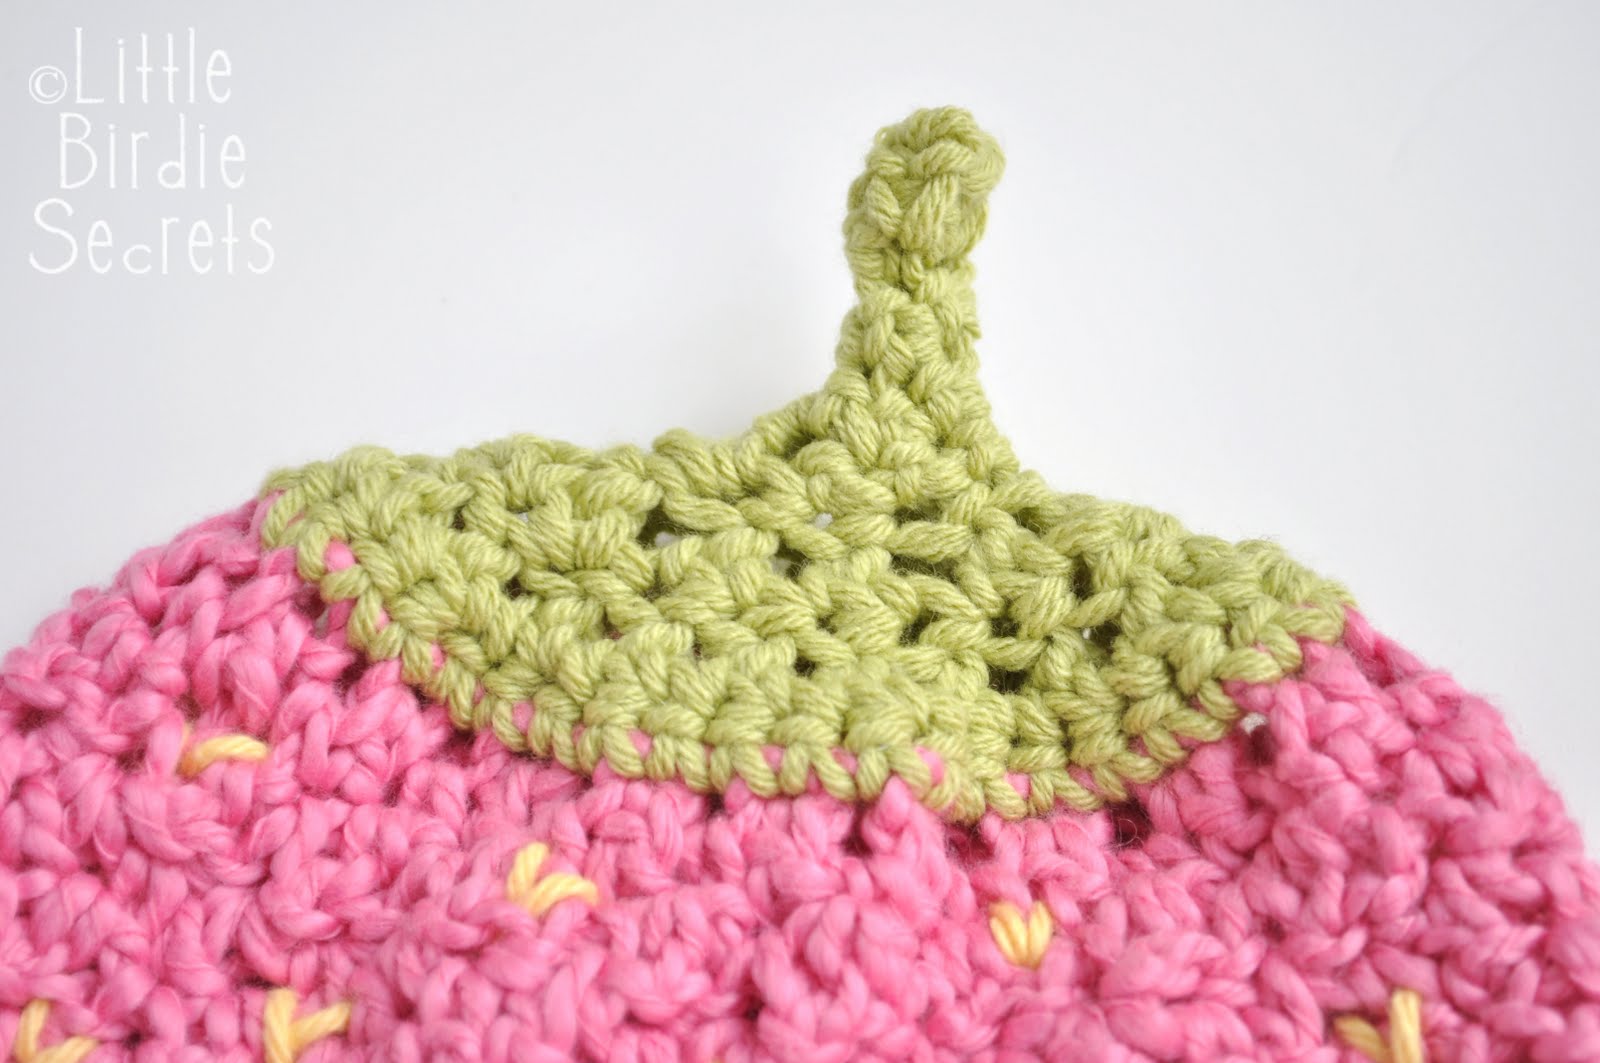 Free crochet pattern: Plus Size Tank Top - Portl
and crochet